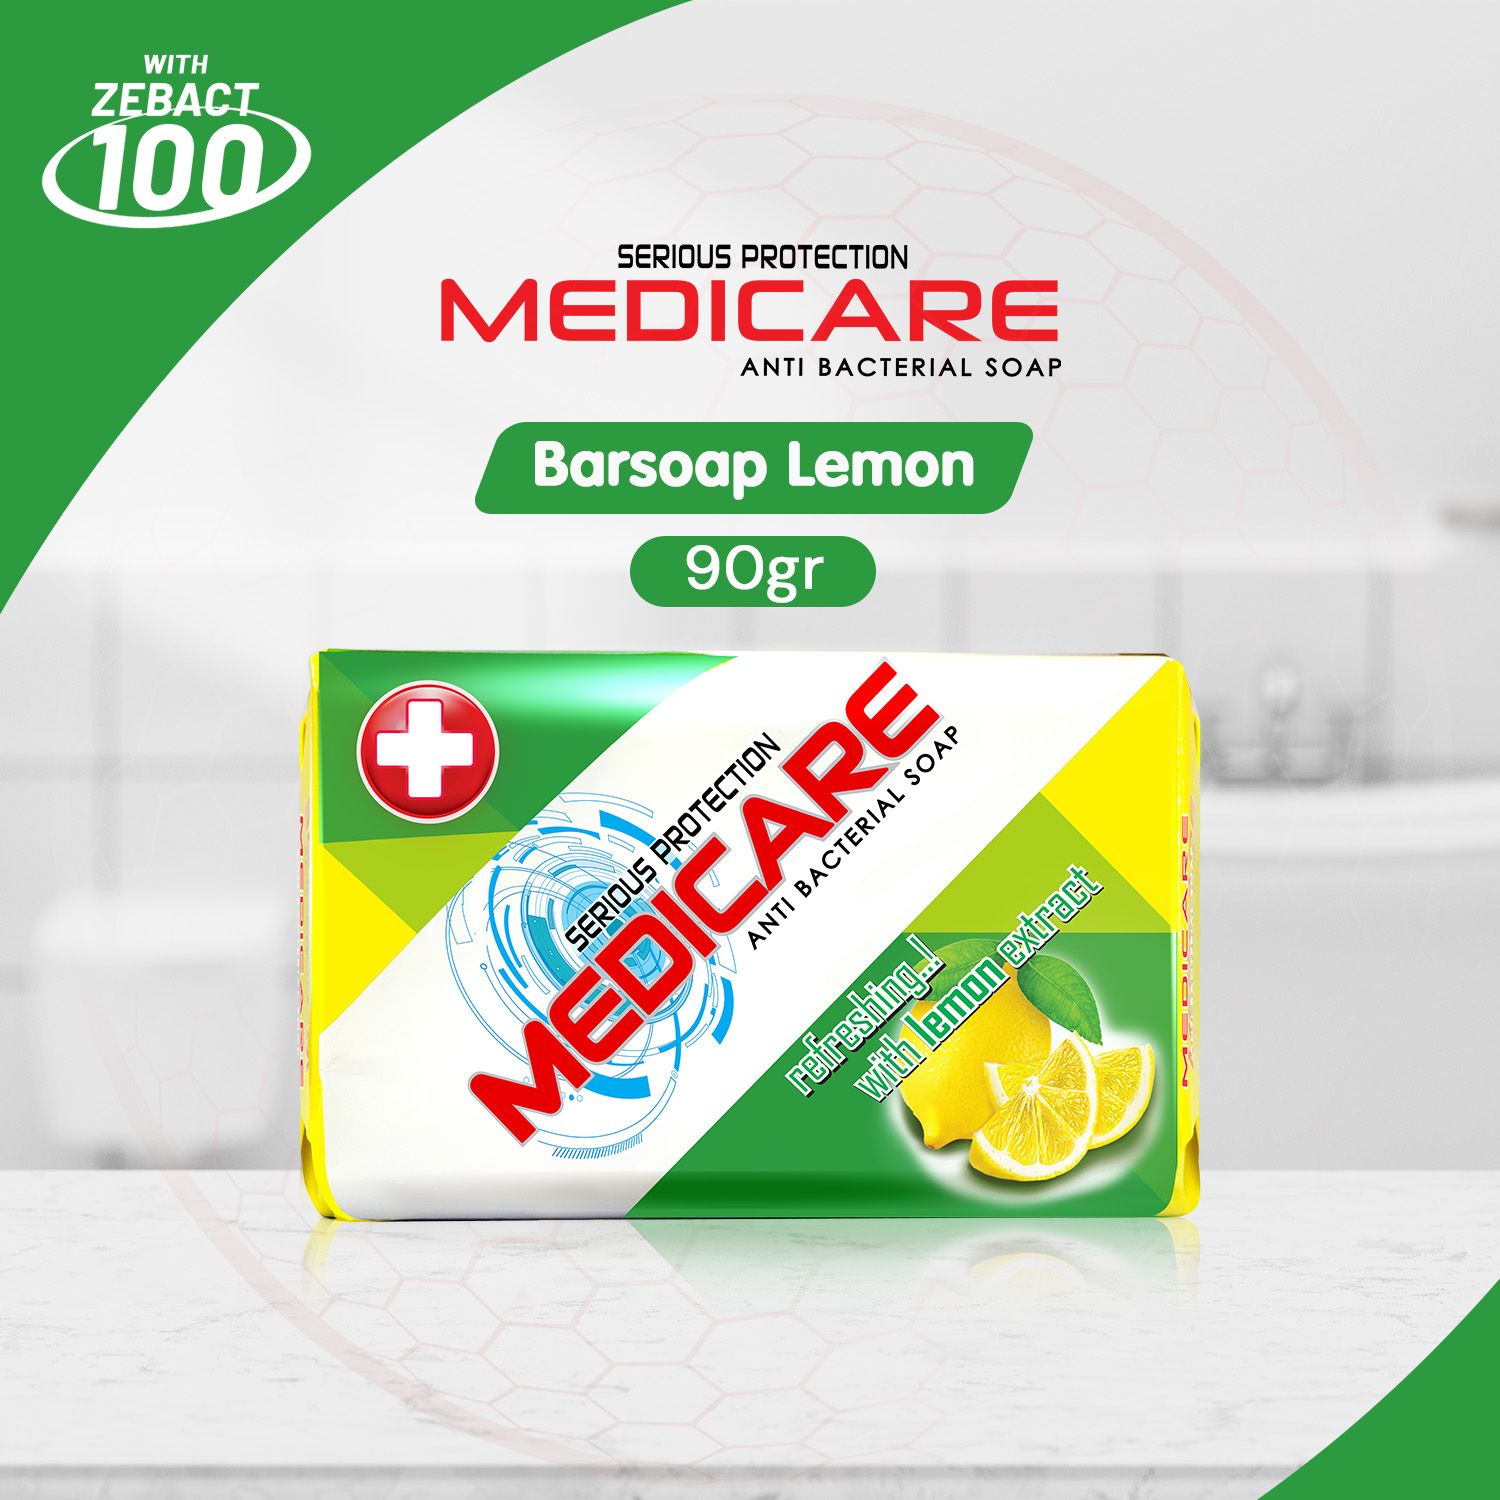 MEDICARE Sabun Antibakteri Lemon 90g - 1